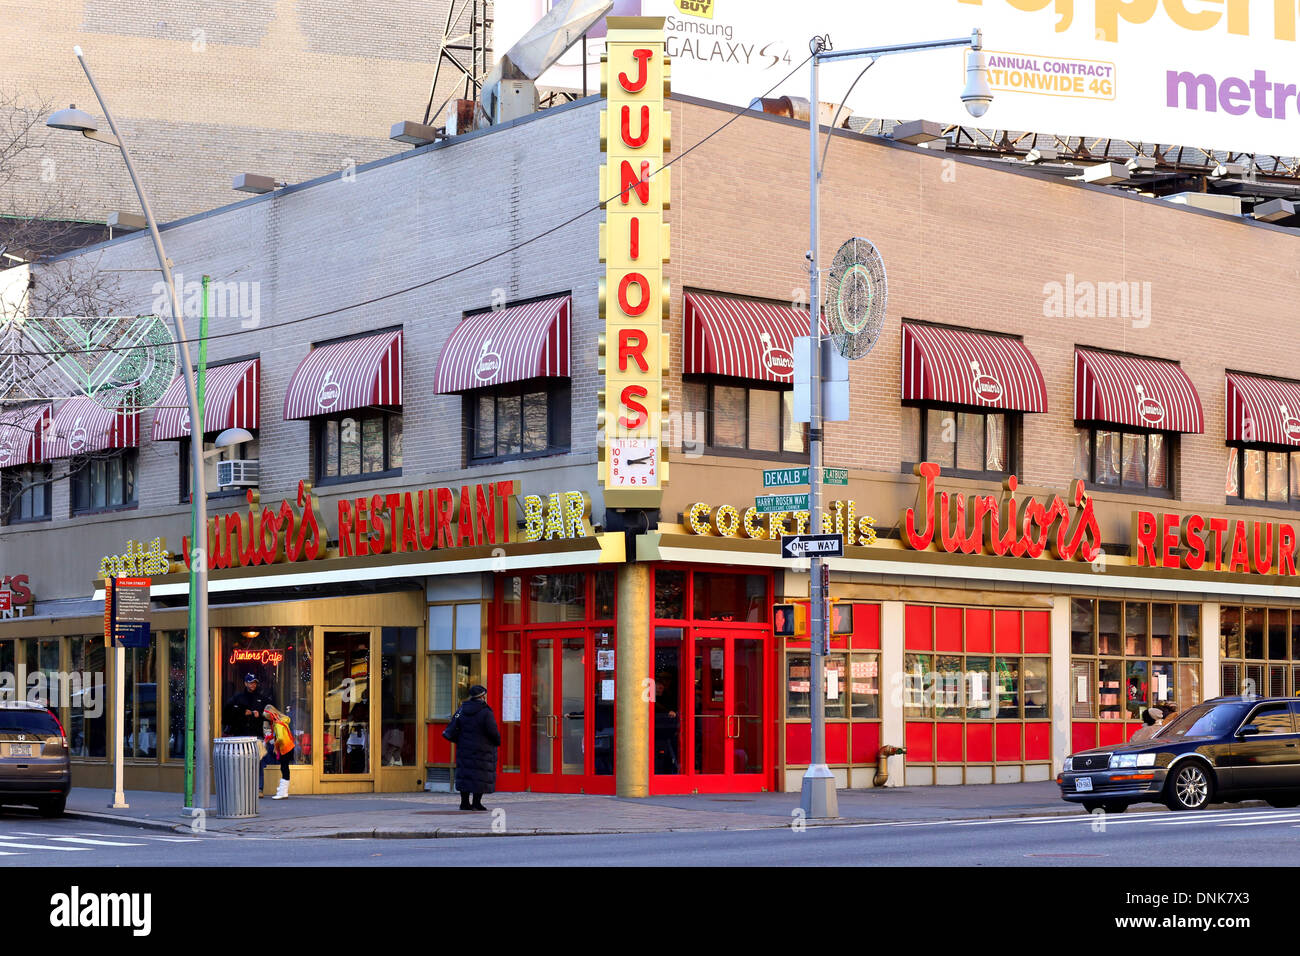 Juniors Restaurant an der Atlantic Avenue, Brooklyn, New York. Foto von einem Restaurant und einer Käsekuchen-Bäckerei in New York. Stockfoto